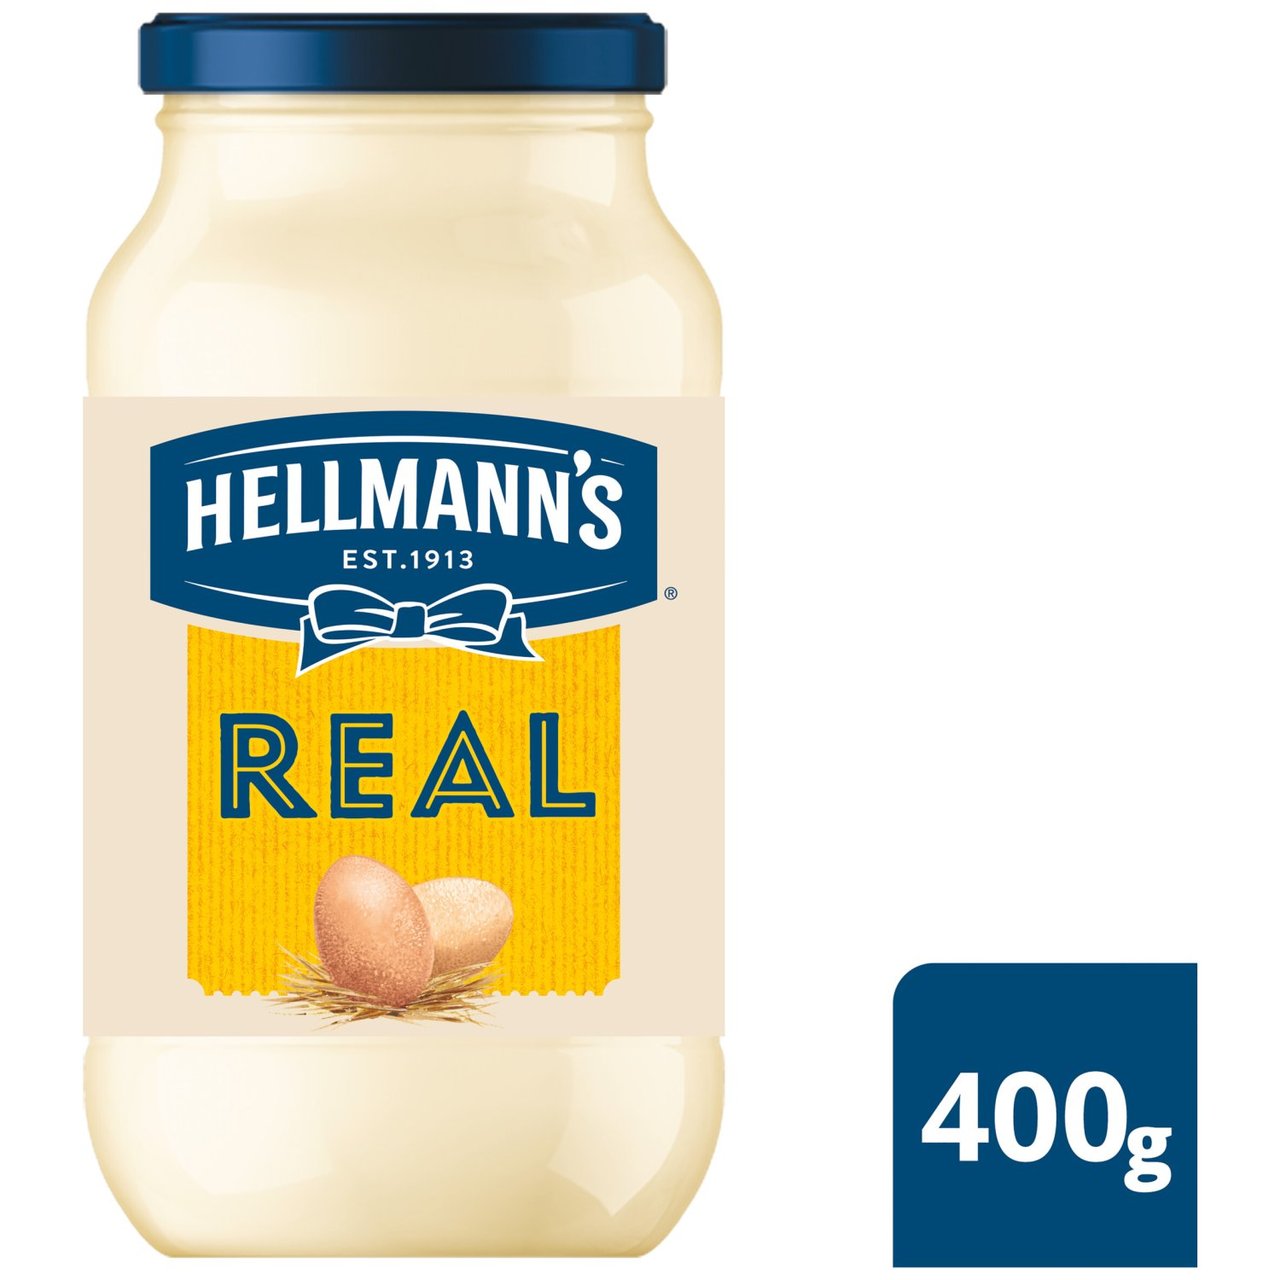 HELLMANN'S REAL MAYONNAISE 404G